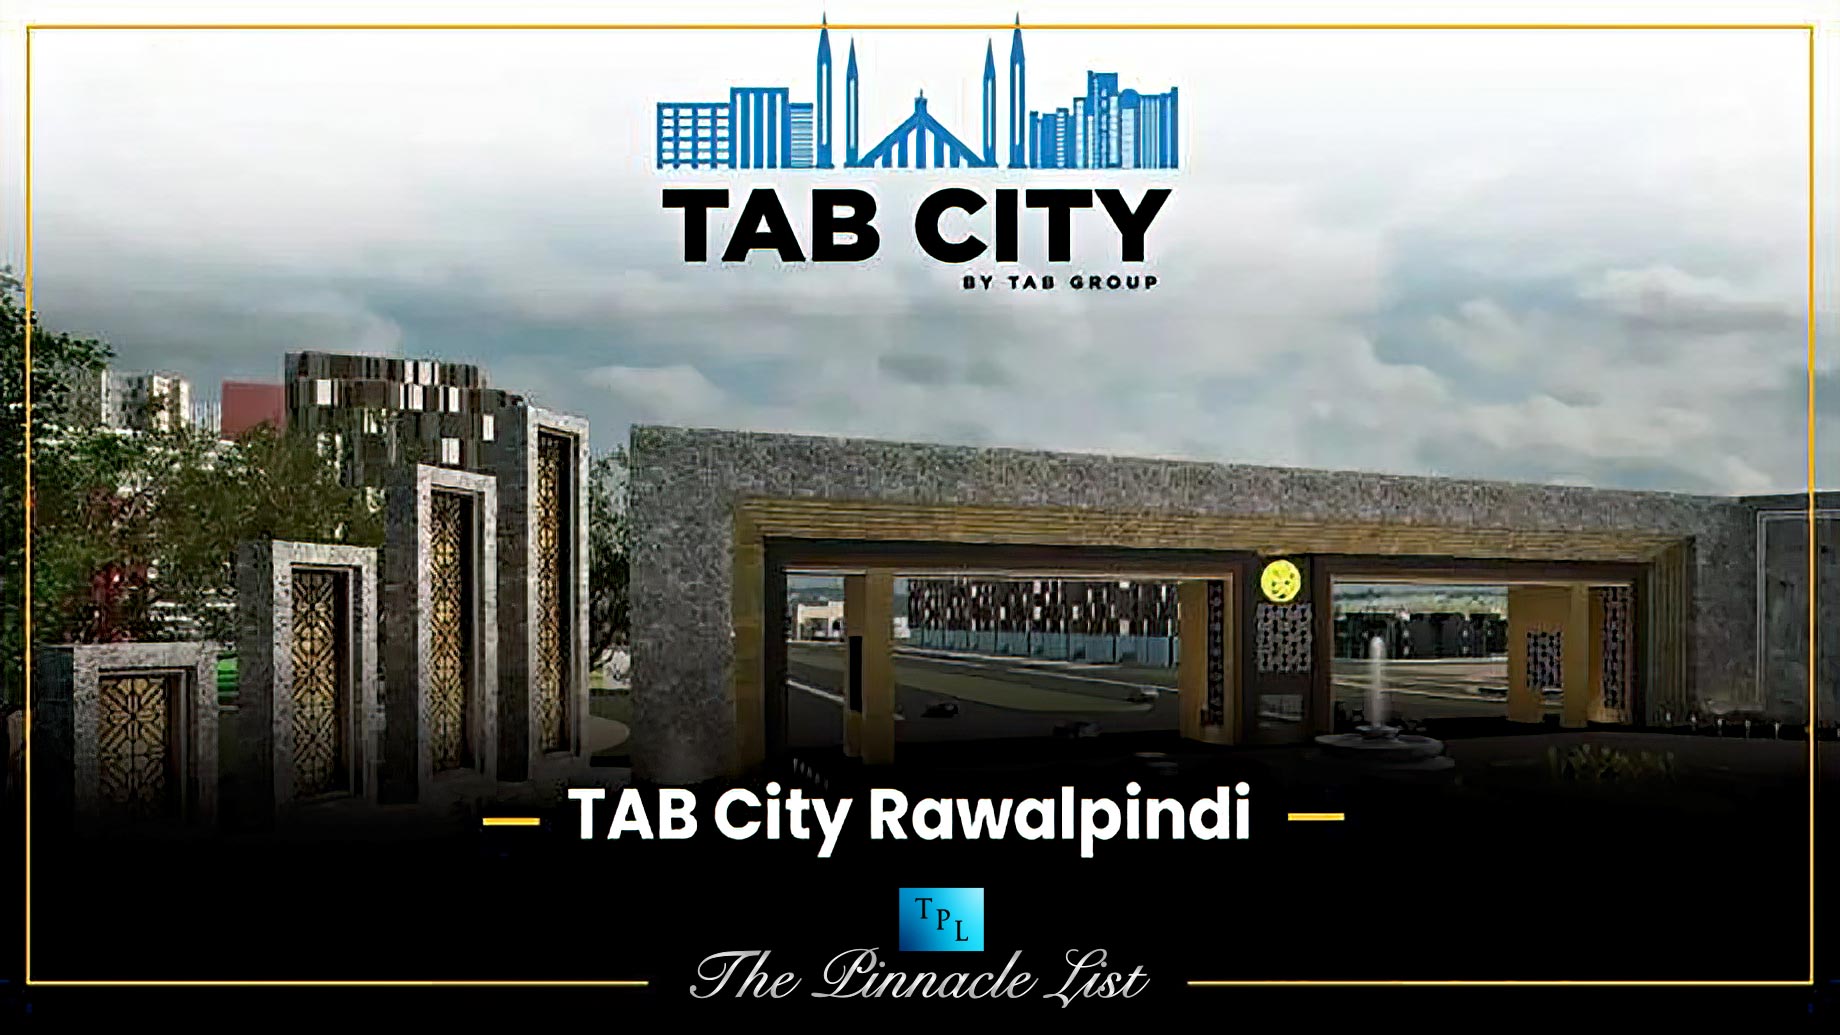 Tab City Rawalpindi, Pakistan